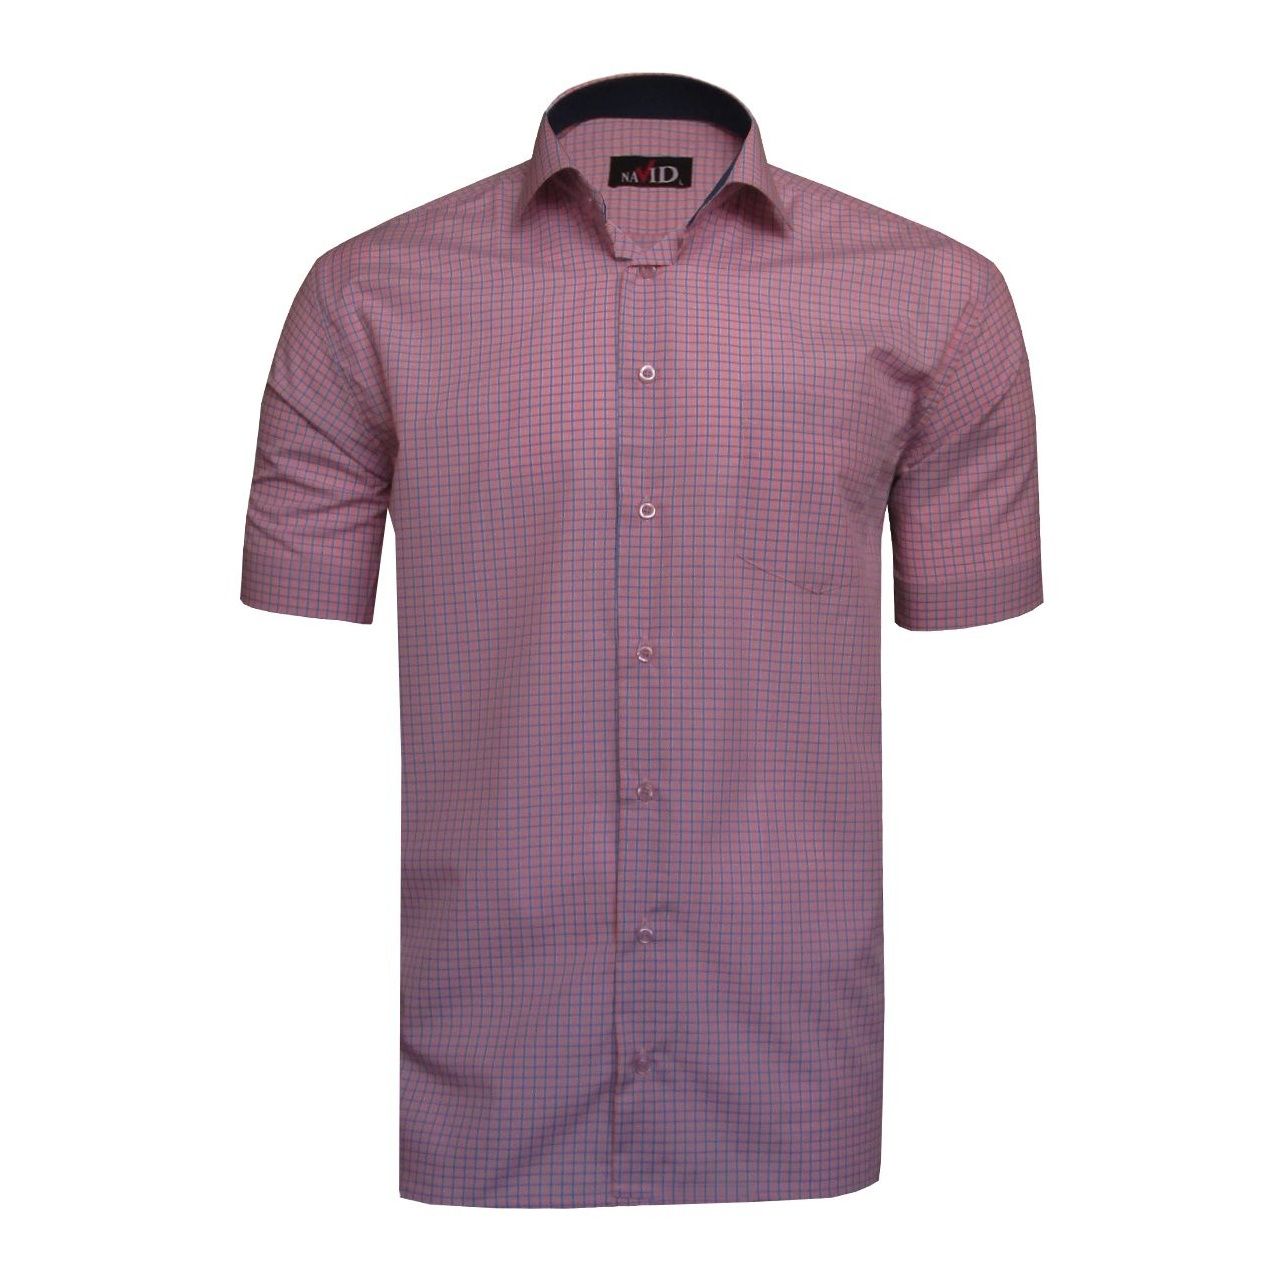 پیراهن آستین کوتاه مردانه نوید مدل TET-DAK کد 20310 رنگ آجری